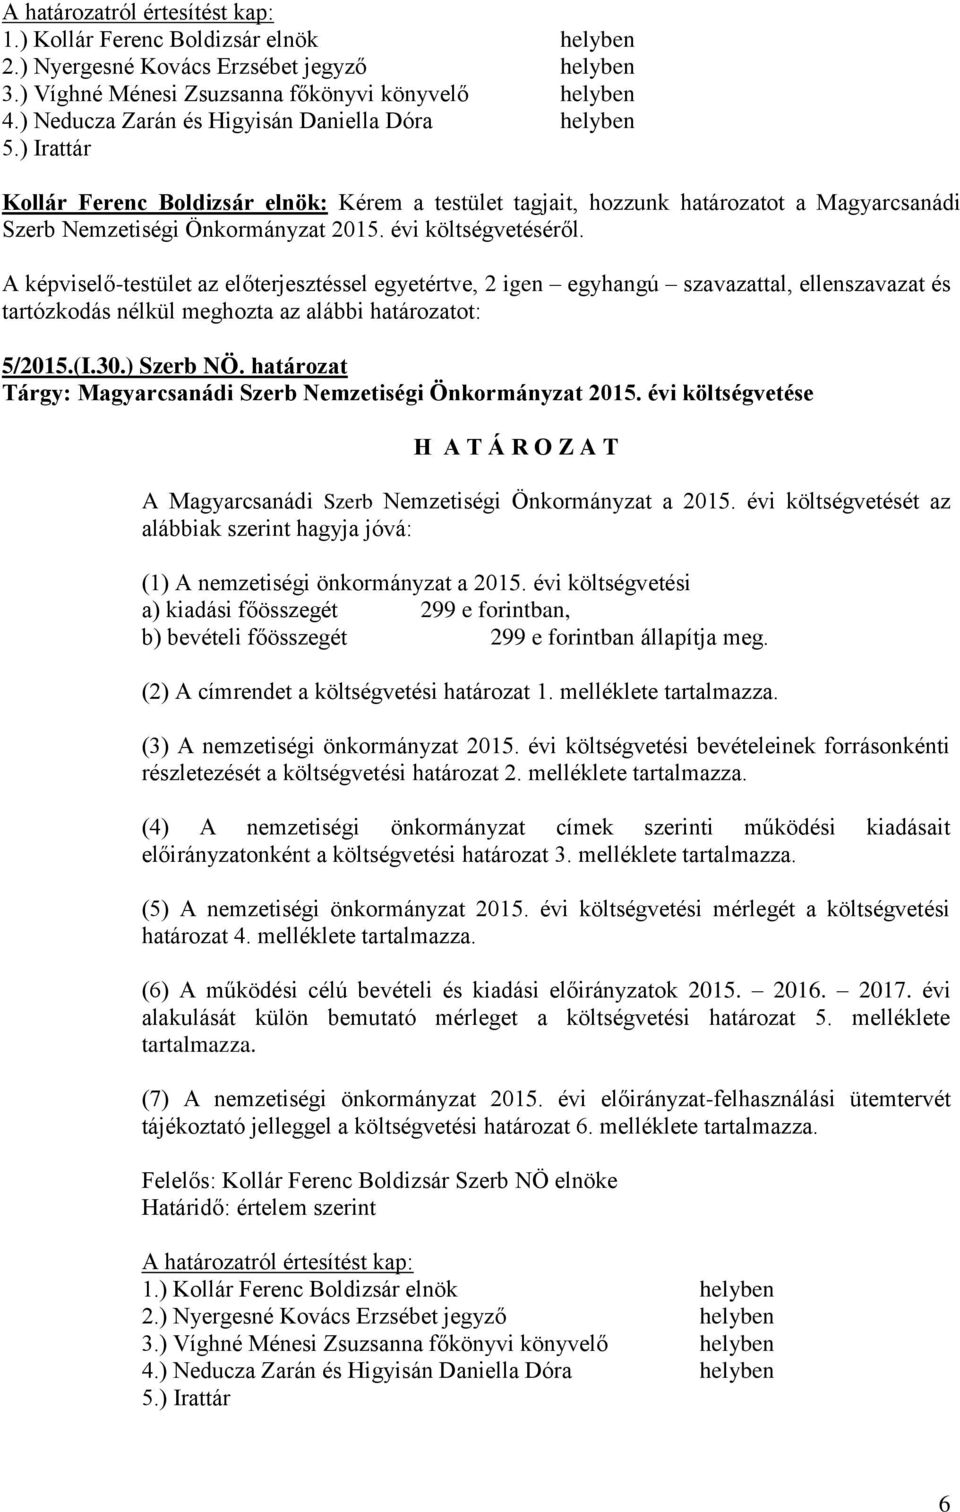 A képviselő-testület az előterjesztéssel egyetértve, 2 igen egyhangú szavazattal, ellenszavazat és tartózkodás nélkül meghozta az alábbi határozatot: 5/2015.(I.30.) Szerb NÖ.